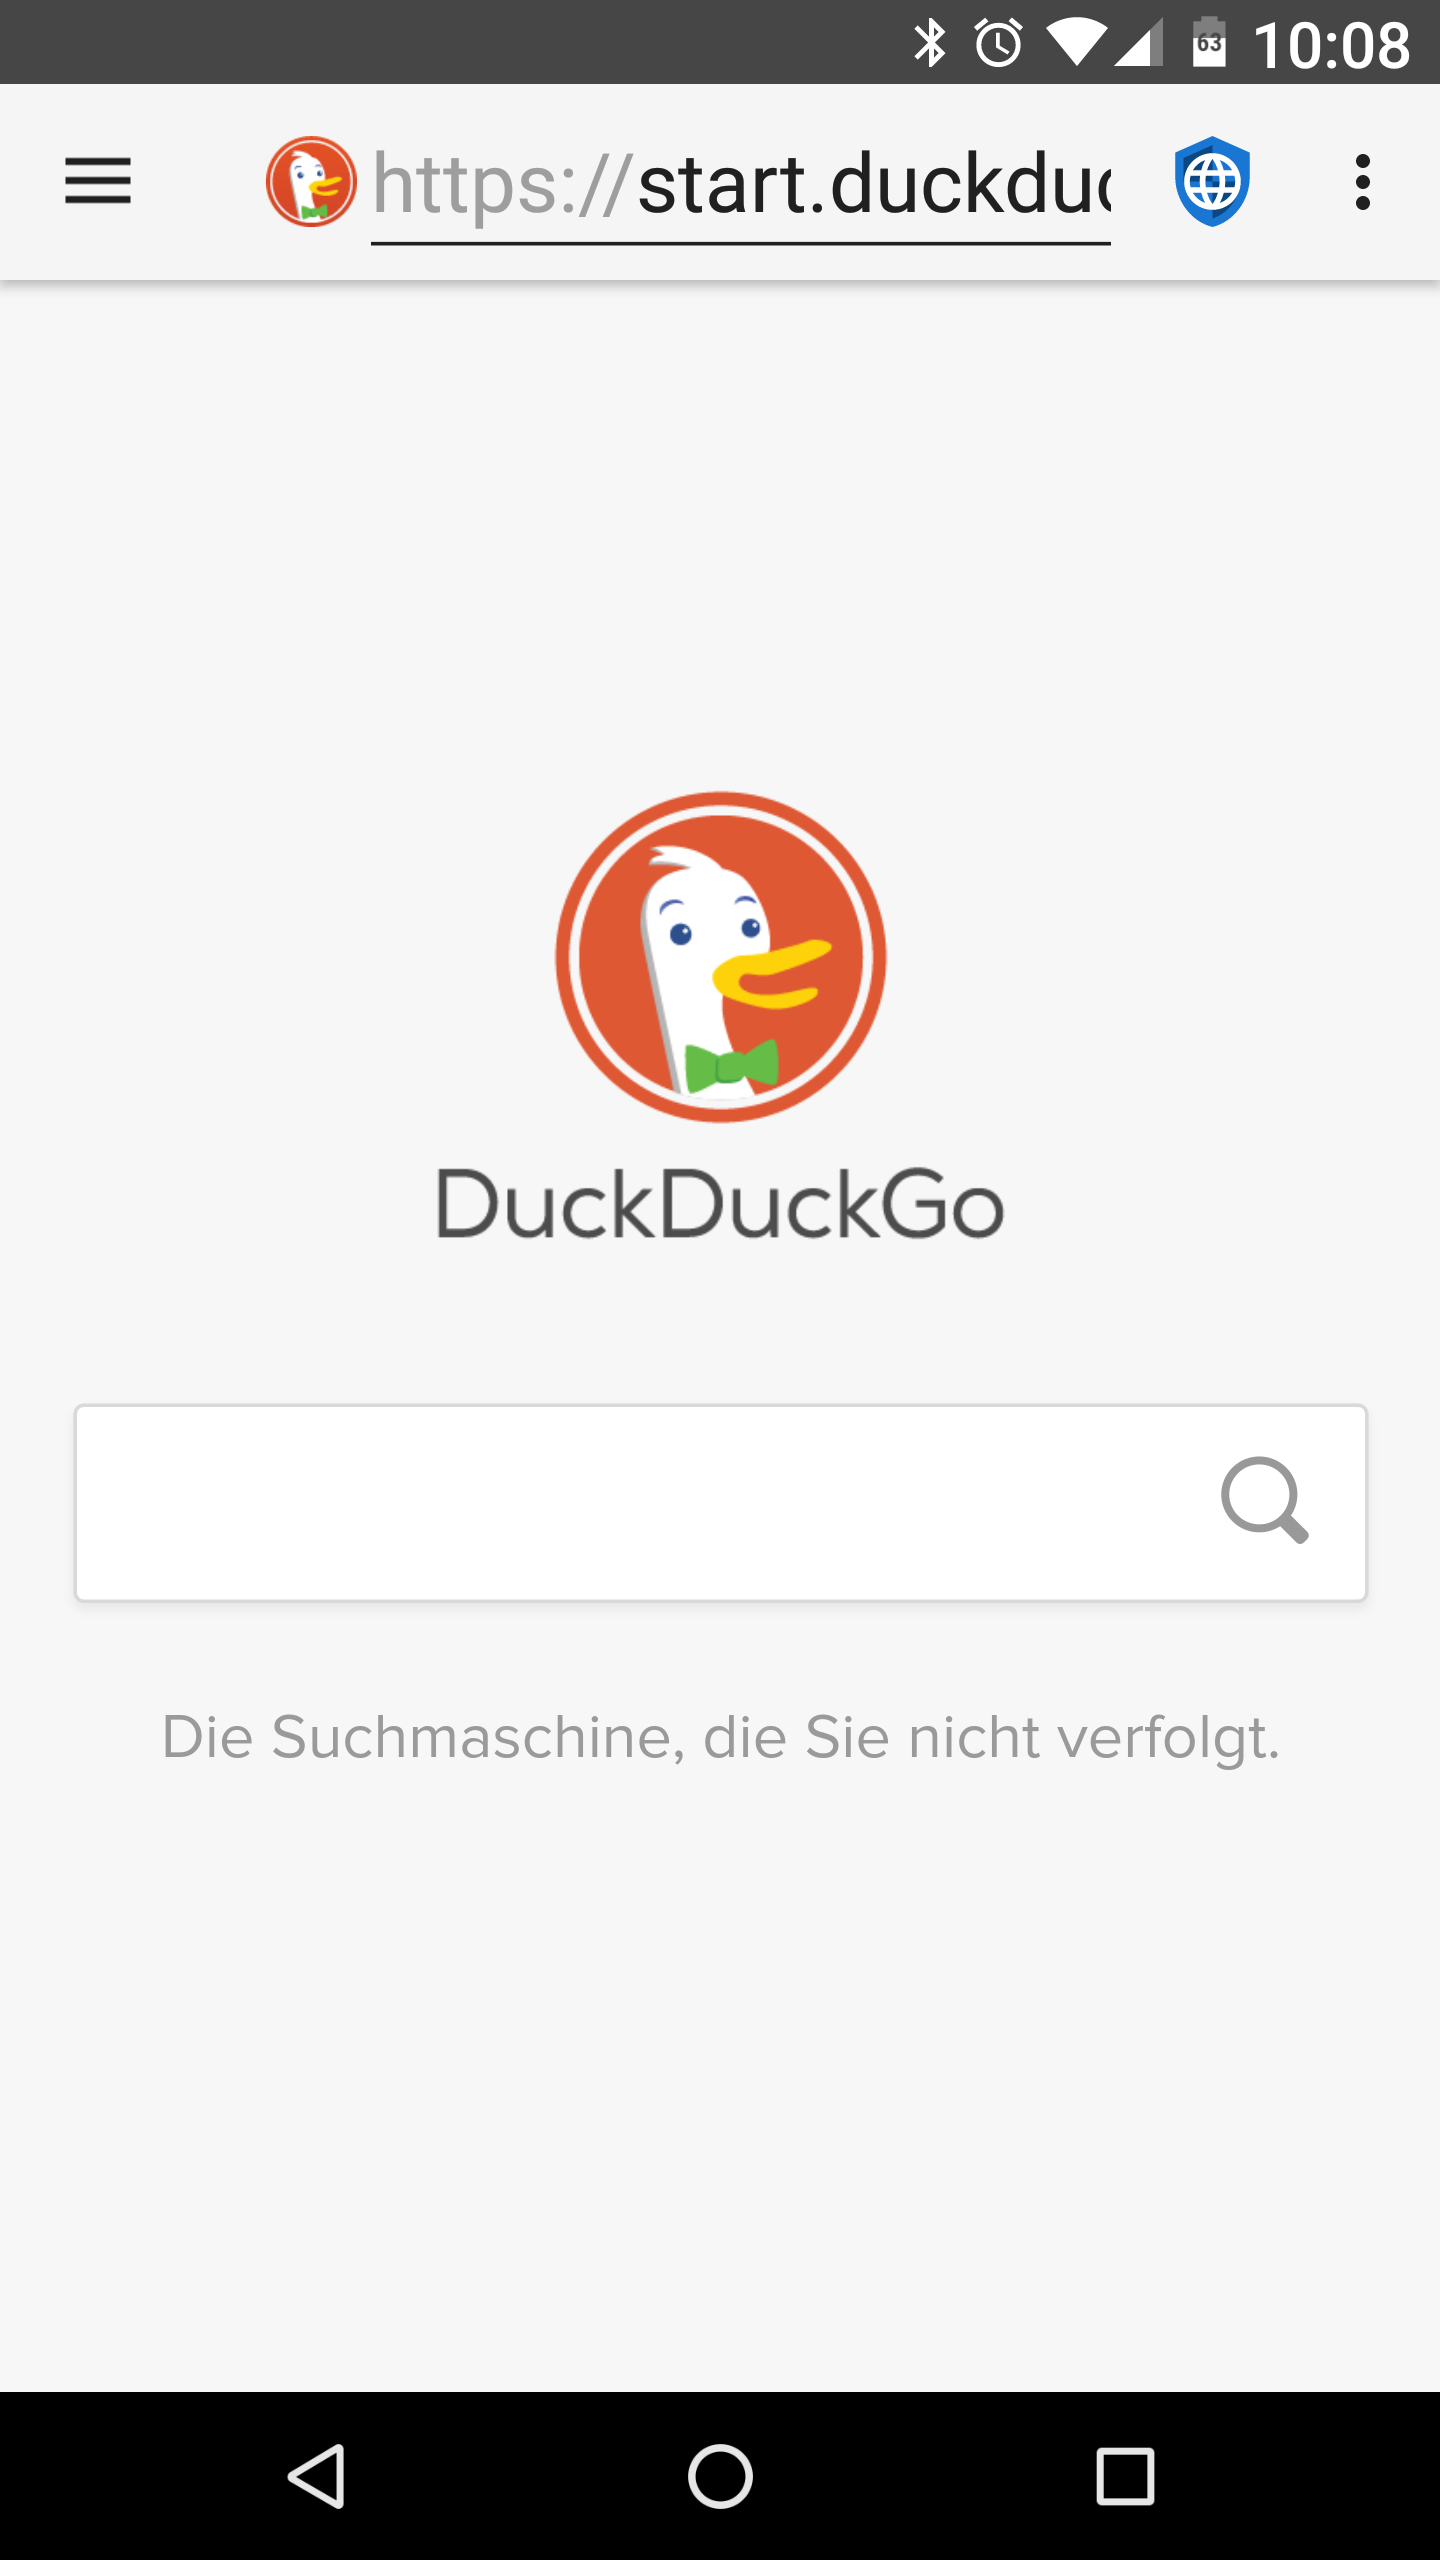 fastlane/metadata/android/de/phoneScreenshots/01-DuckDuckGo.png